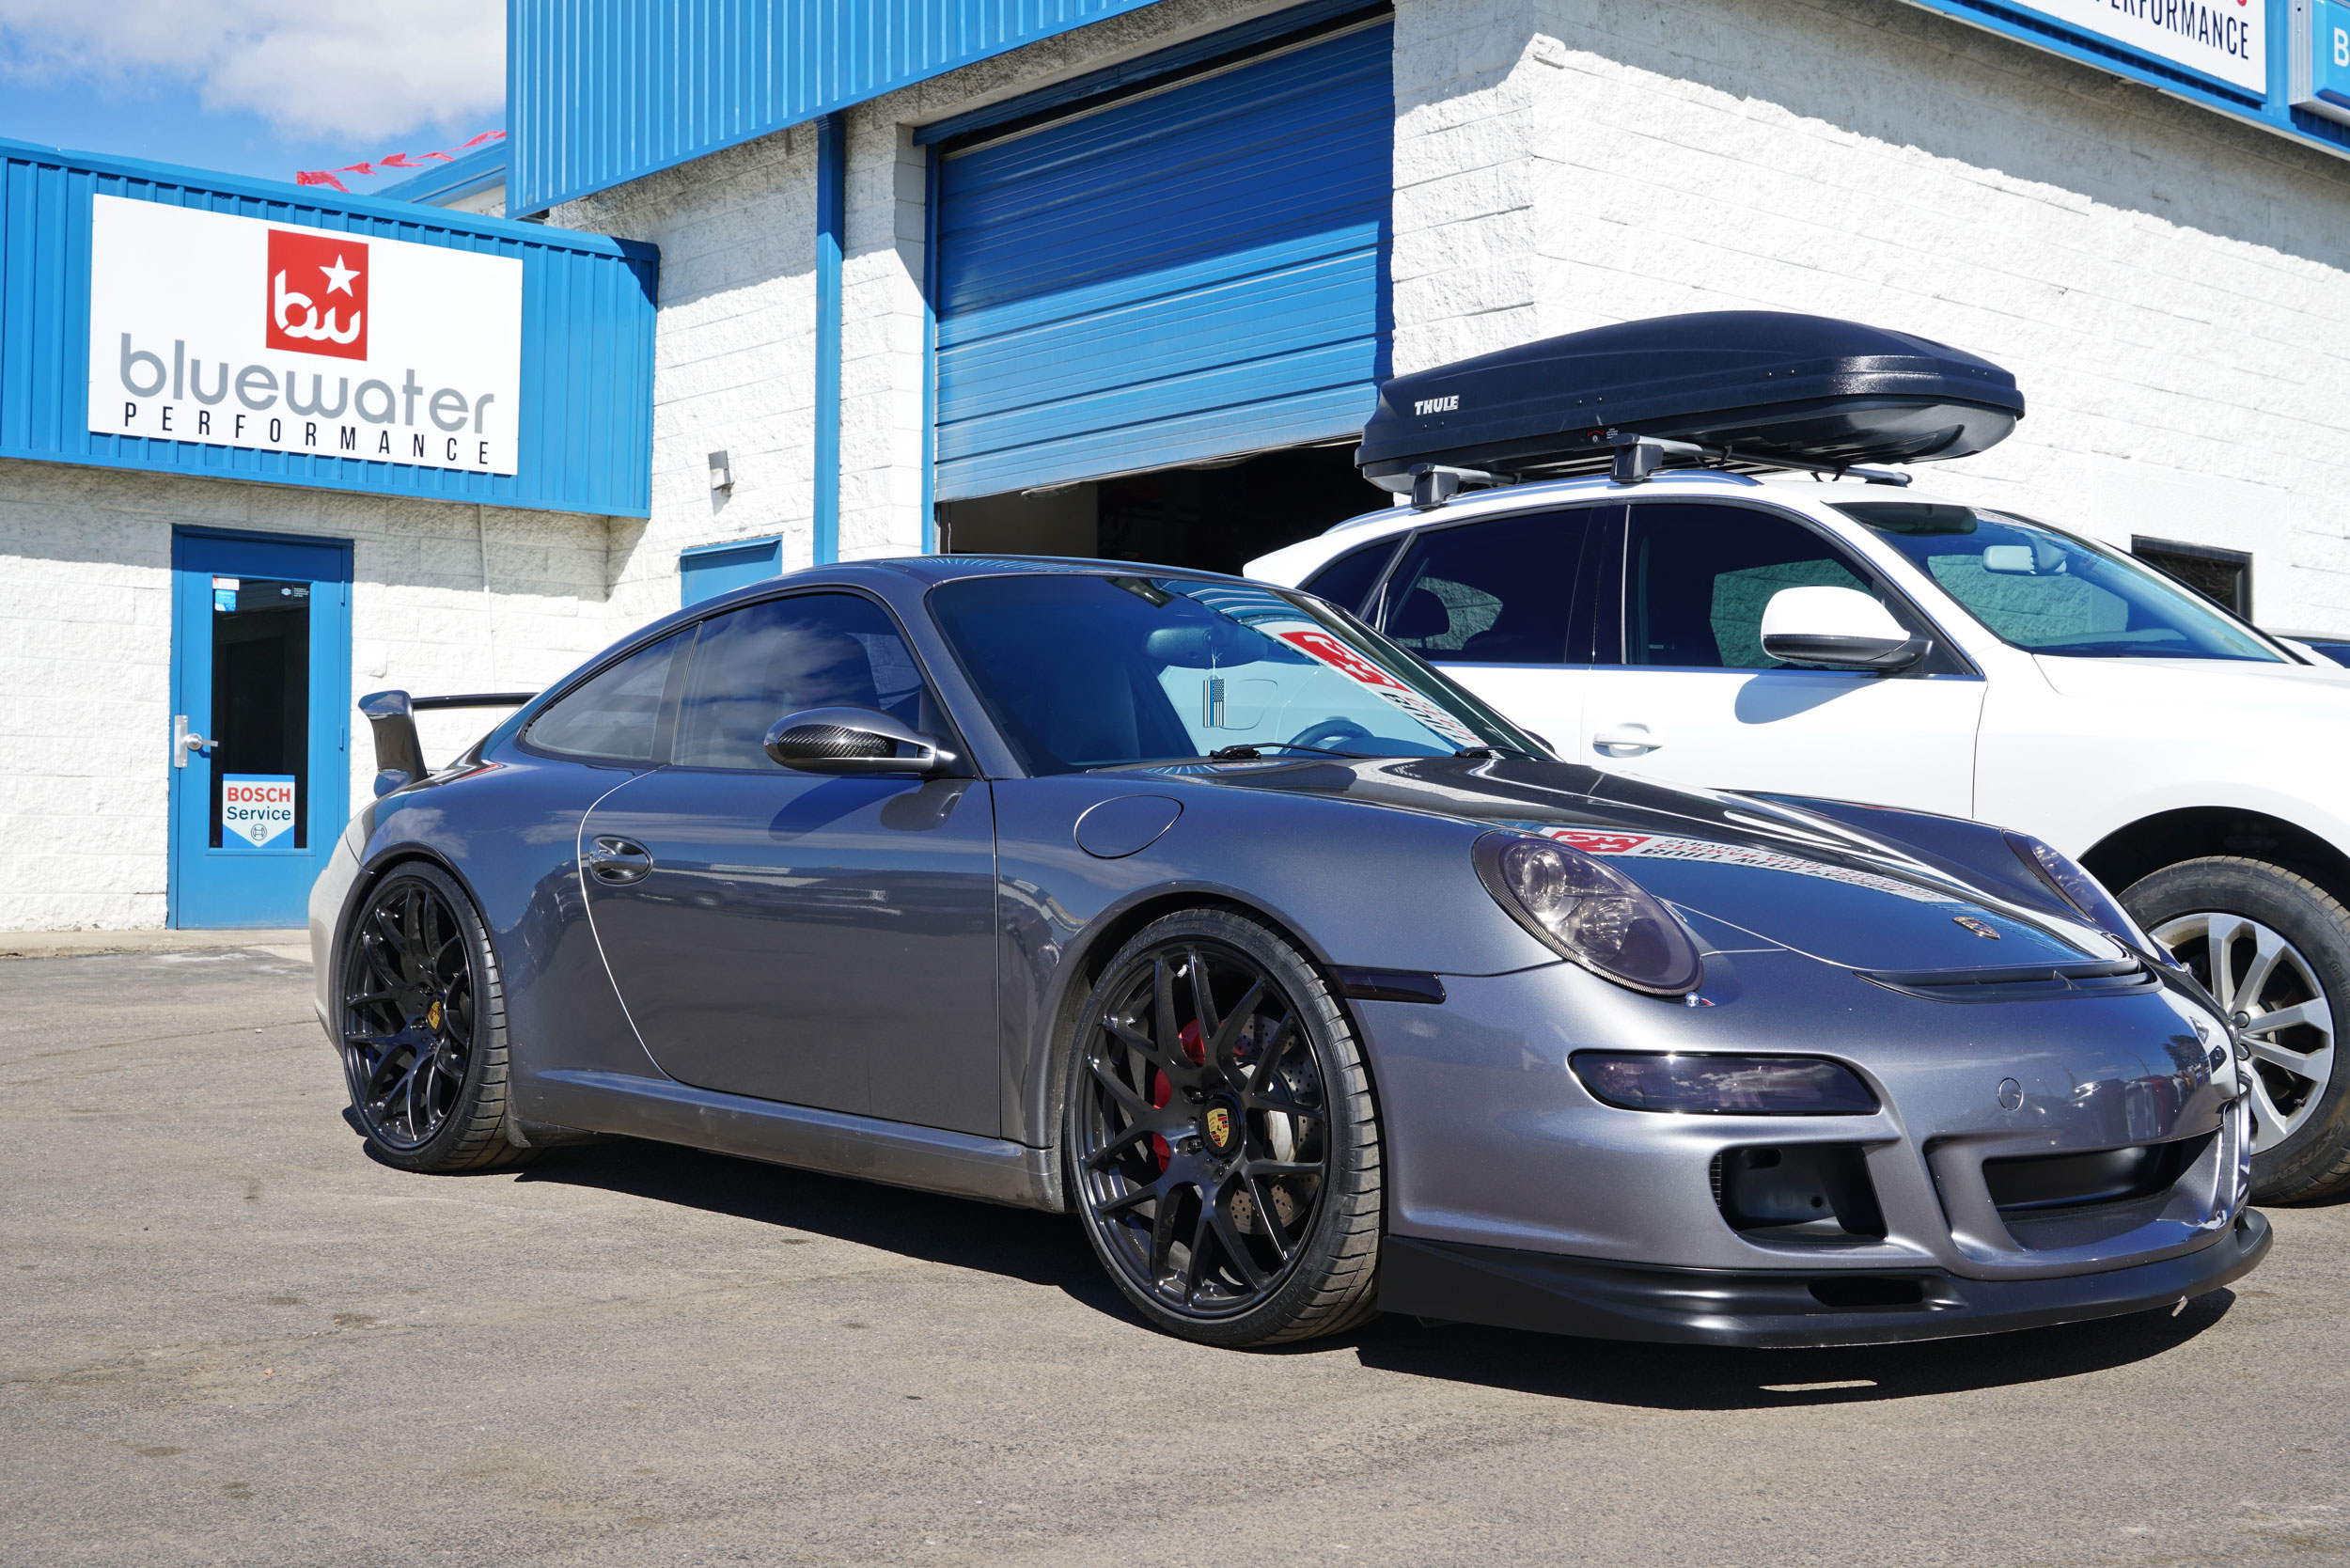 Porsche repair shop in Denver, CO